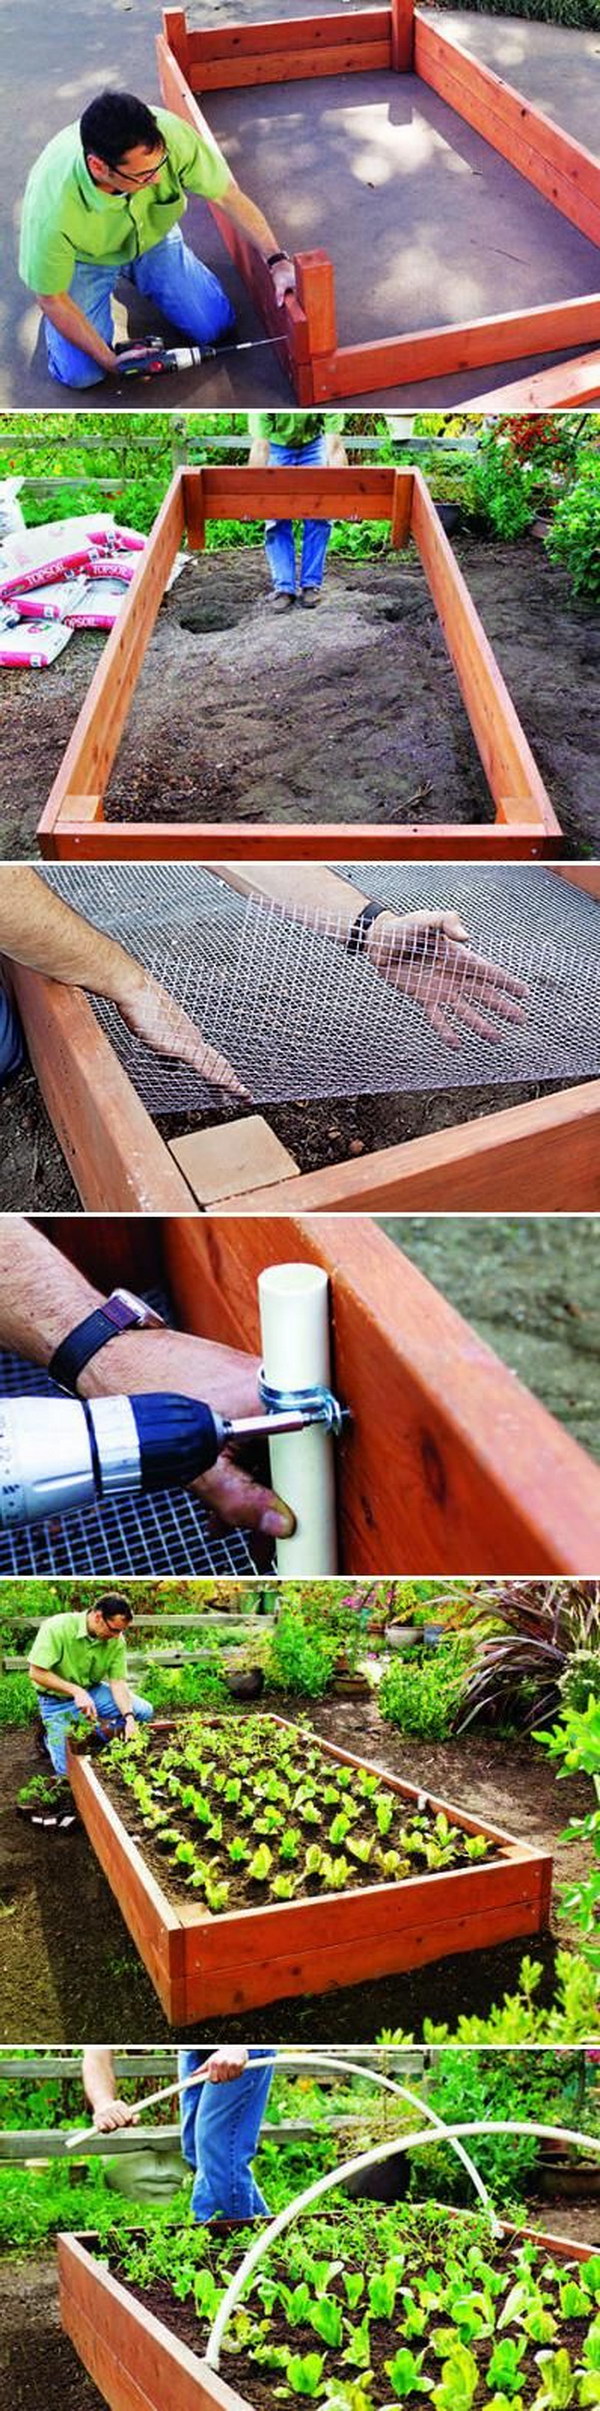 How To Build A Simple Cedar Raise Garden Bed. 